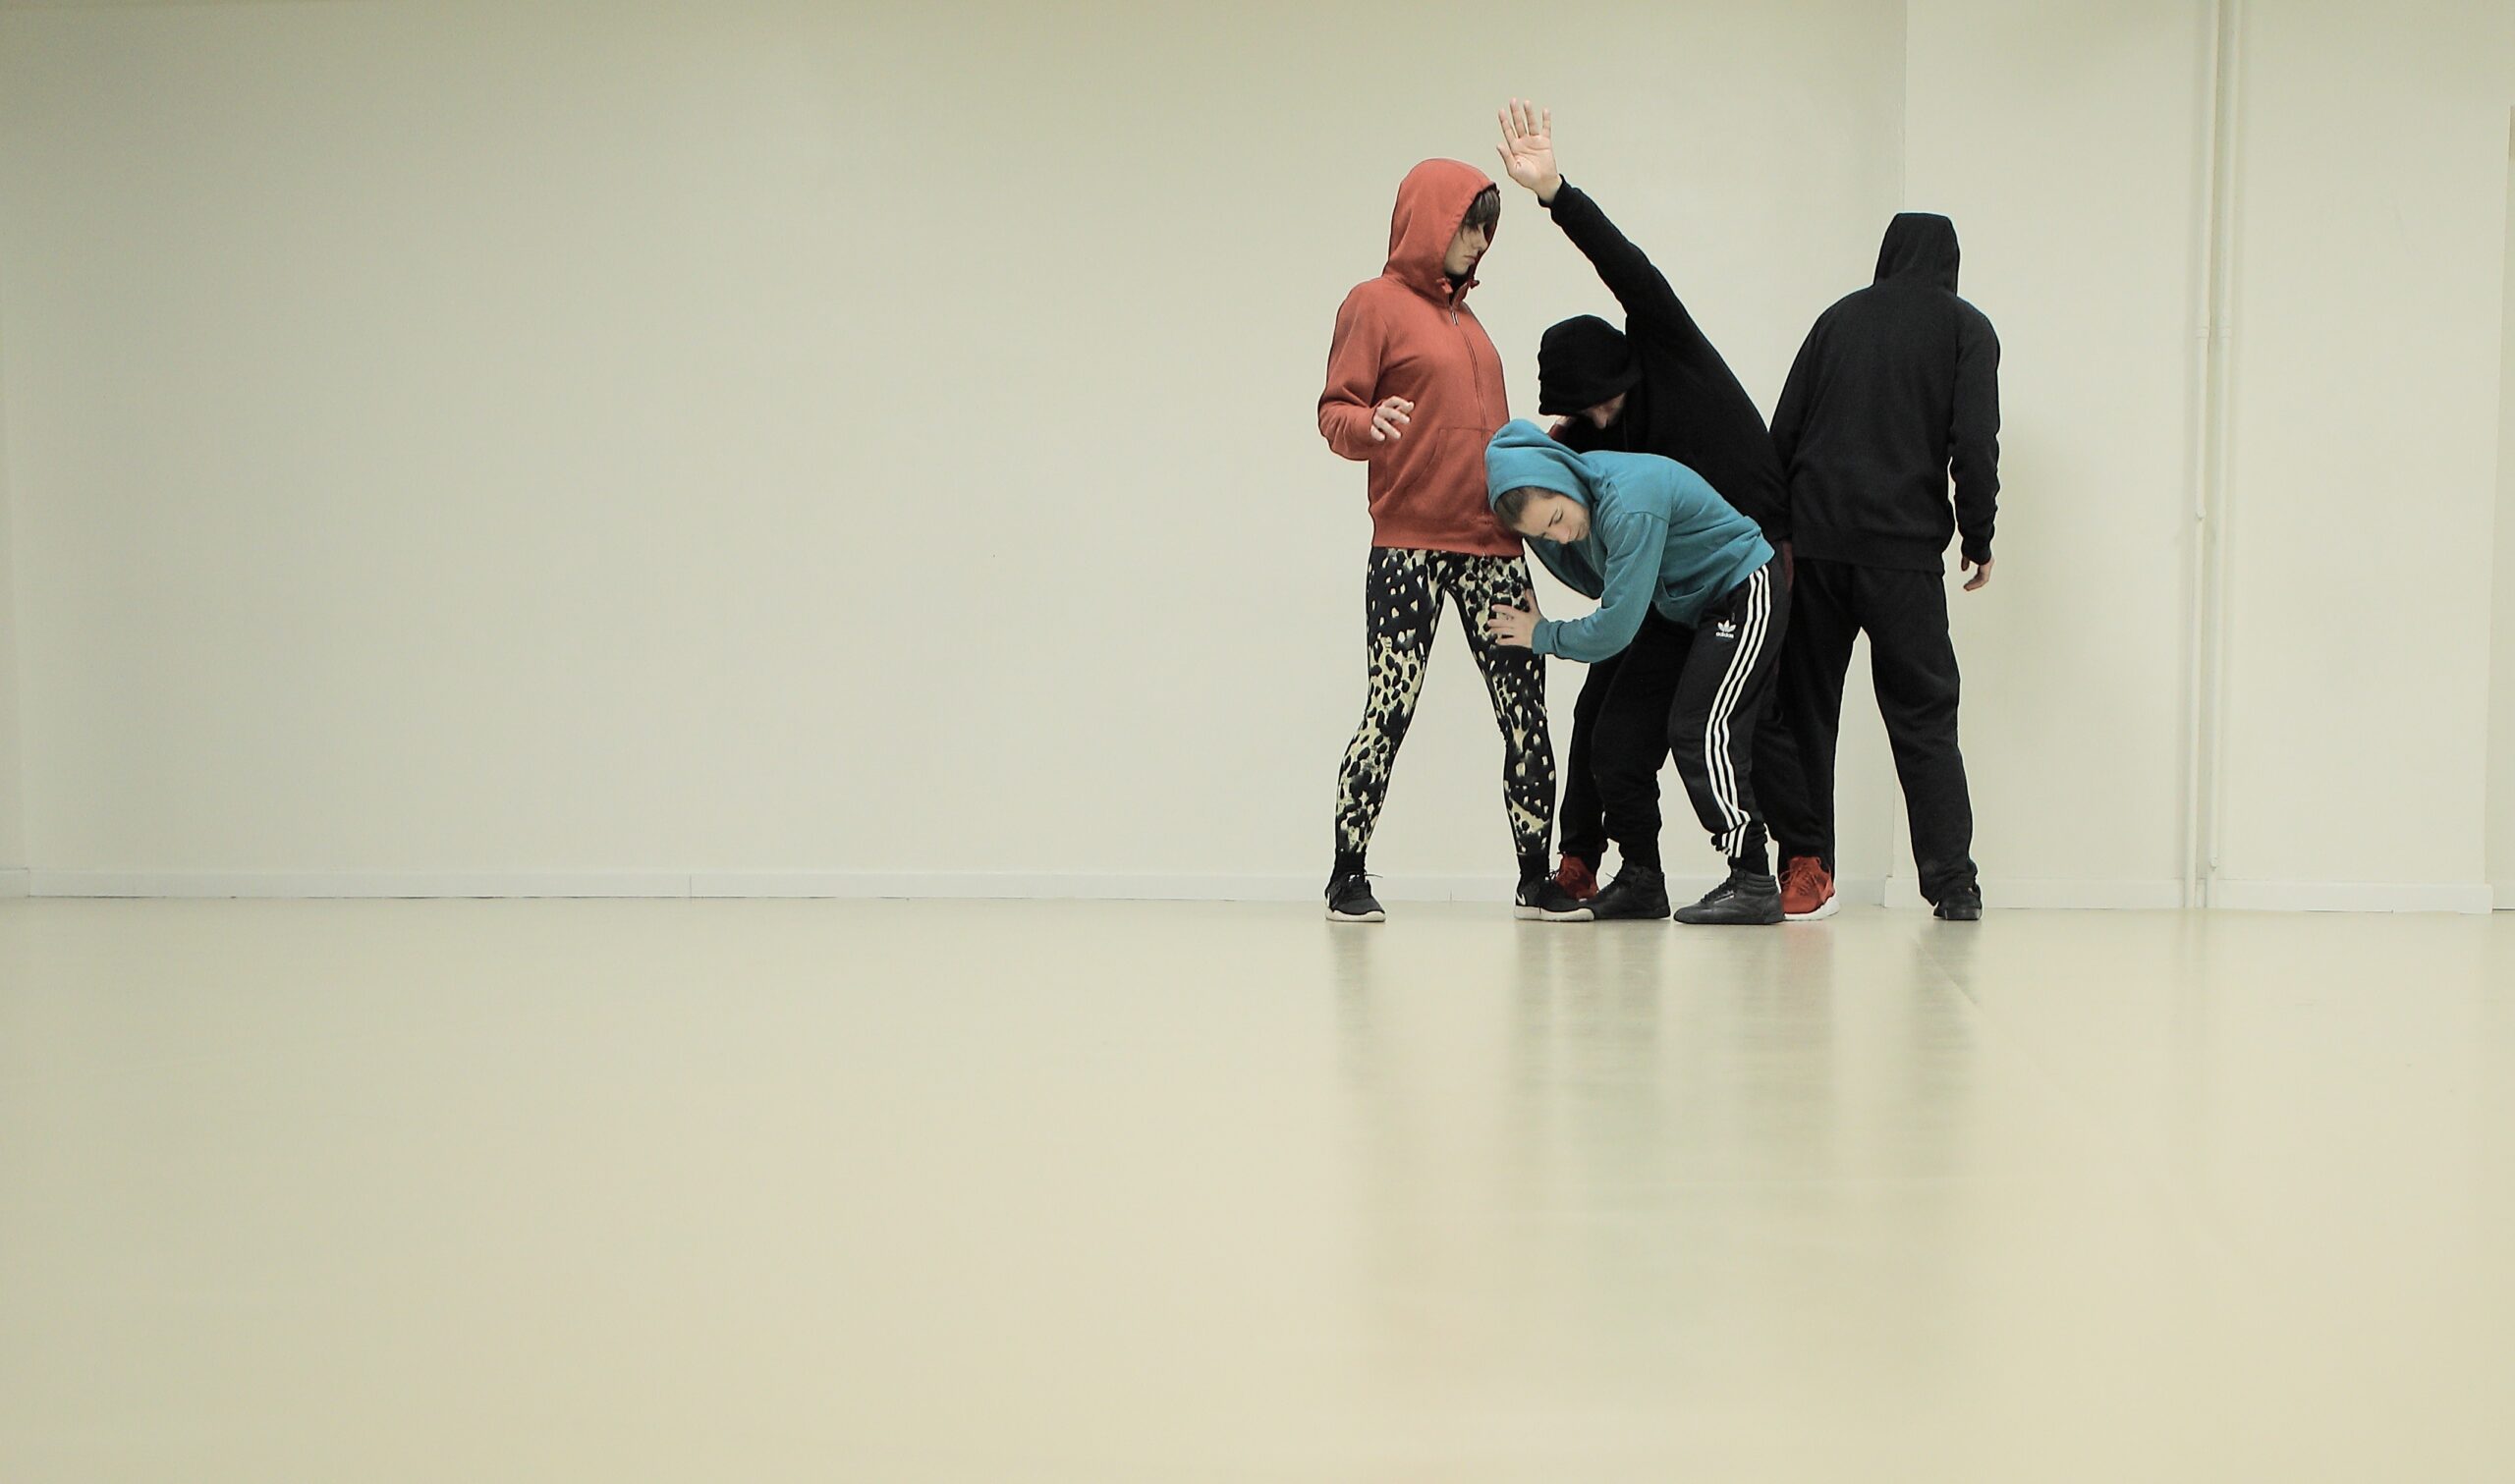 Θέατρο Act: Σεμινάριο κίνησης & αυτοσχεδιασμού με τον χορογράφο Σπύρο Κουβαρά